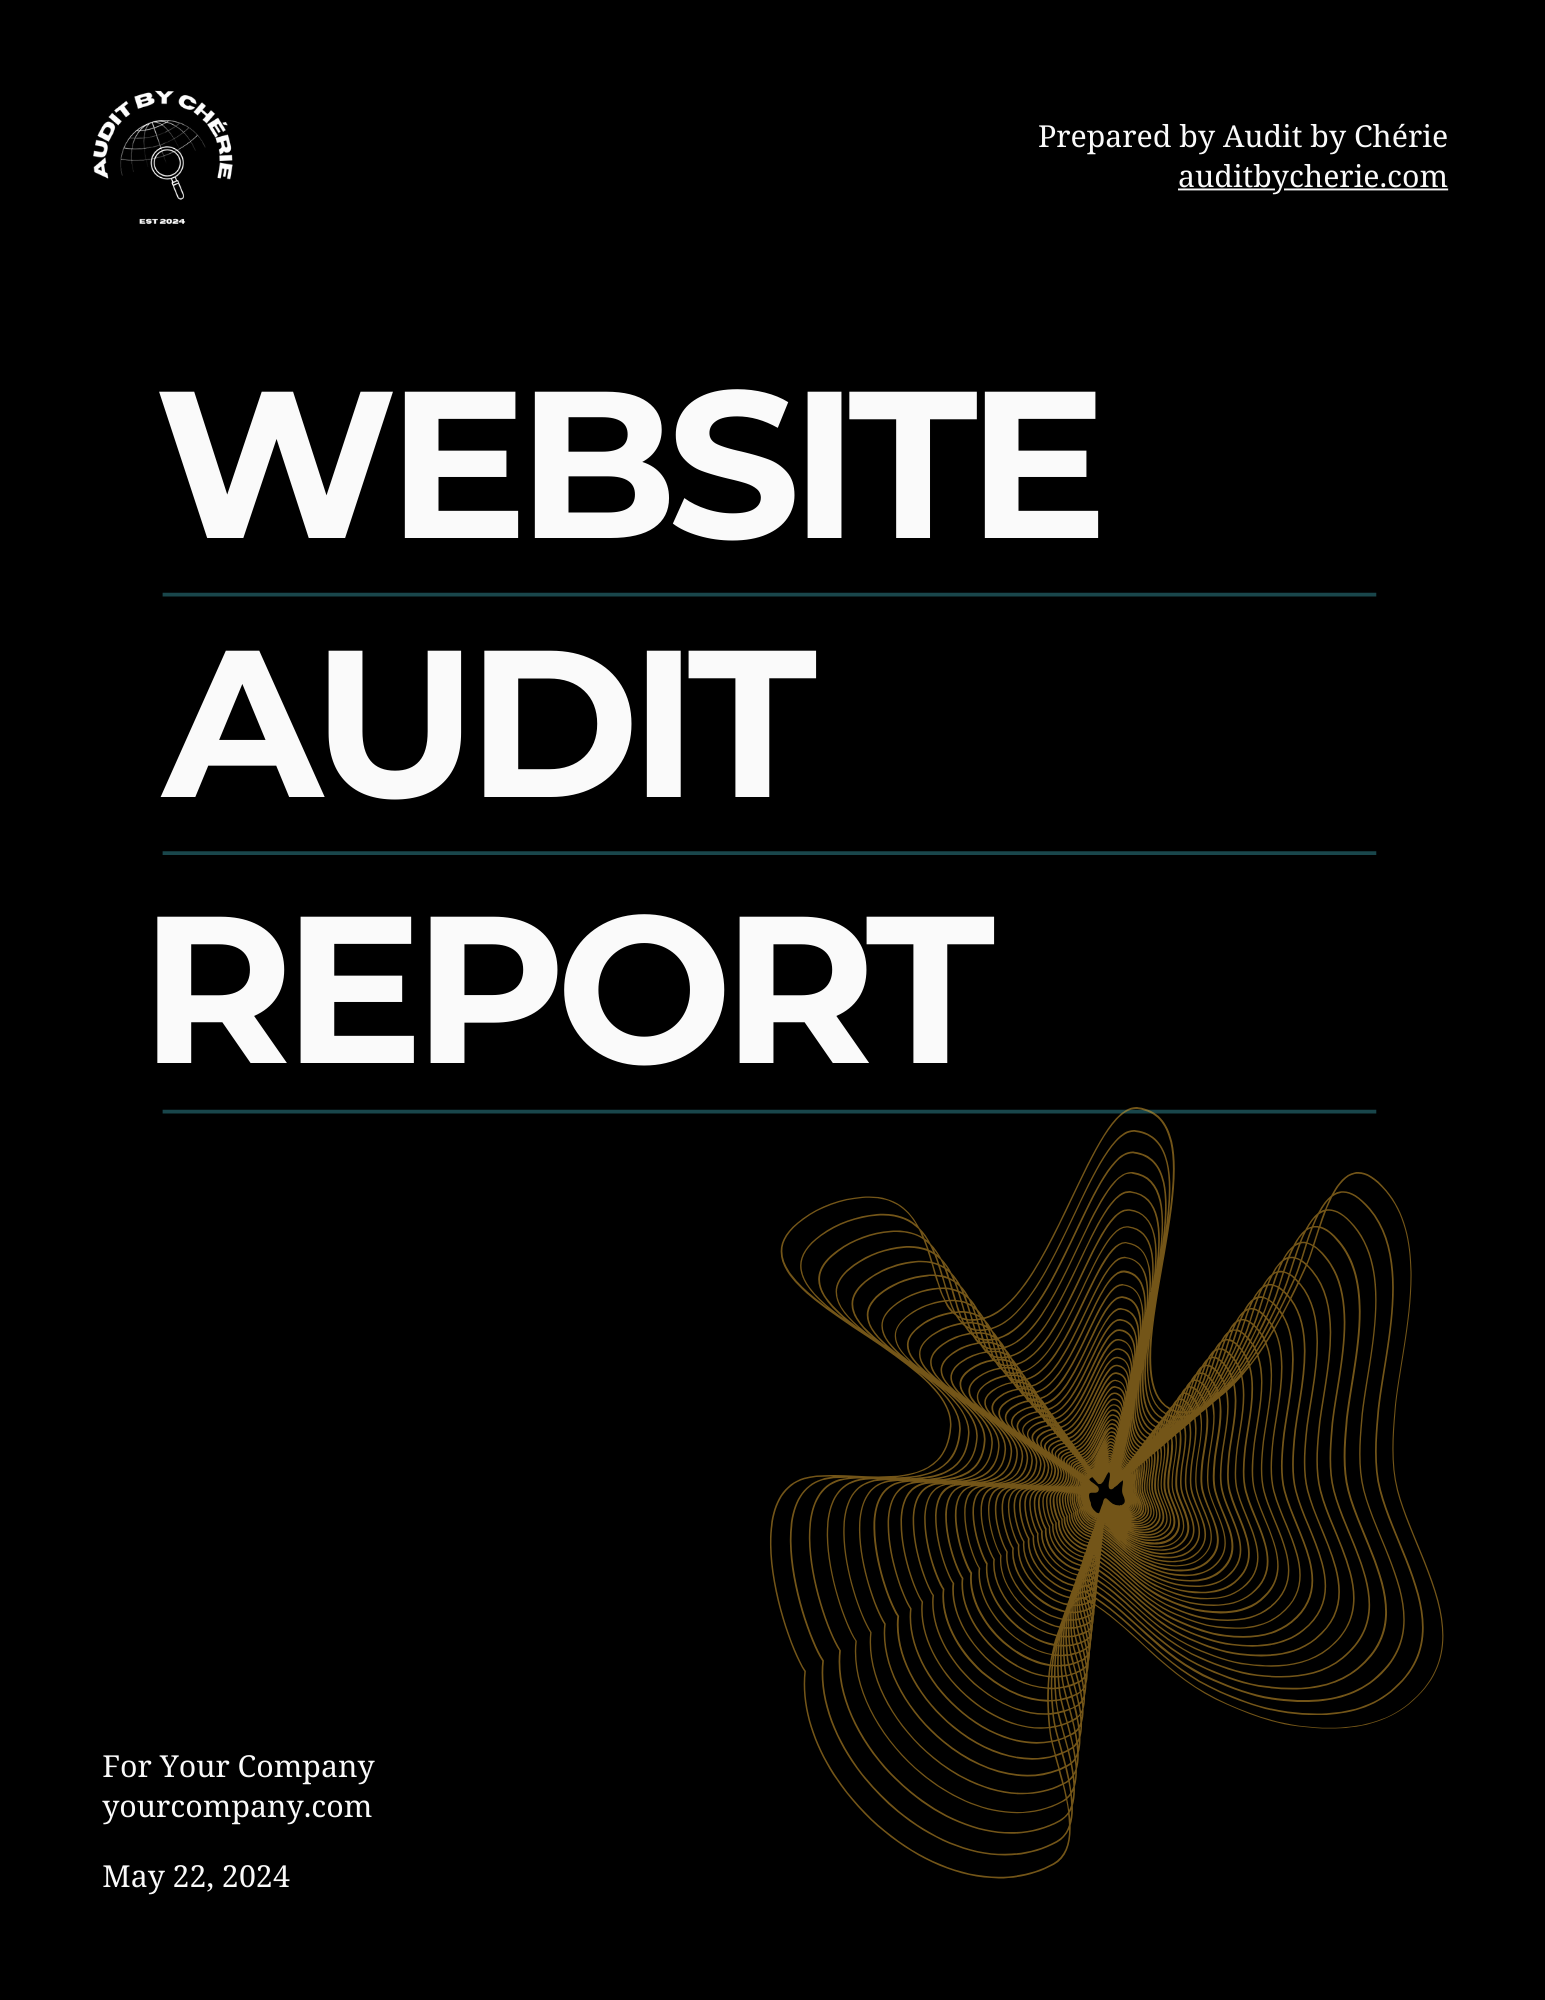 Audit by Chérie Report